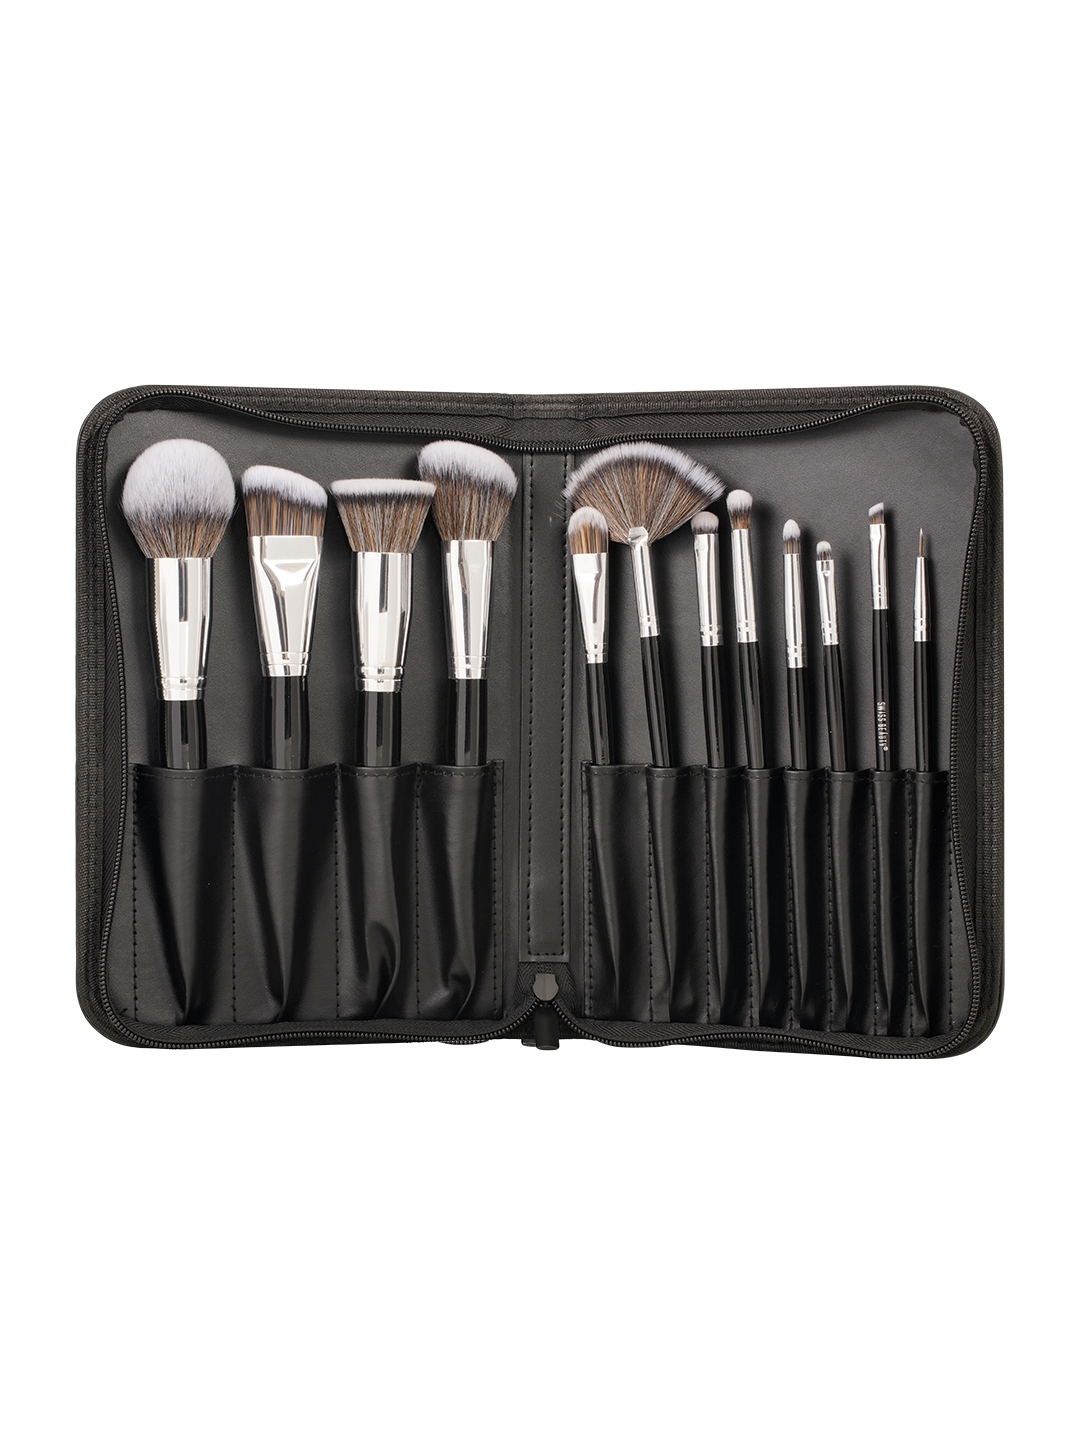 Swiss Beauty | Swiss Beauty Professional Makeup Brush Set - Black, Silver (12 Pcs)